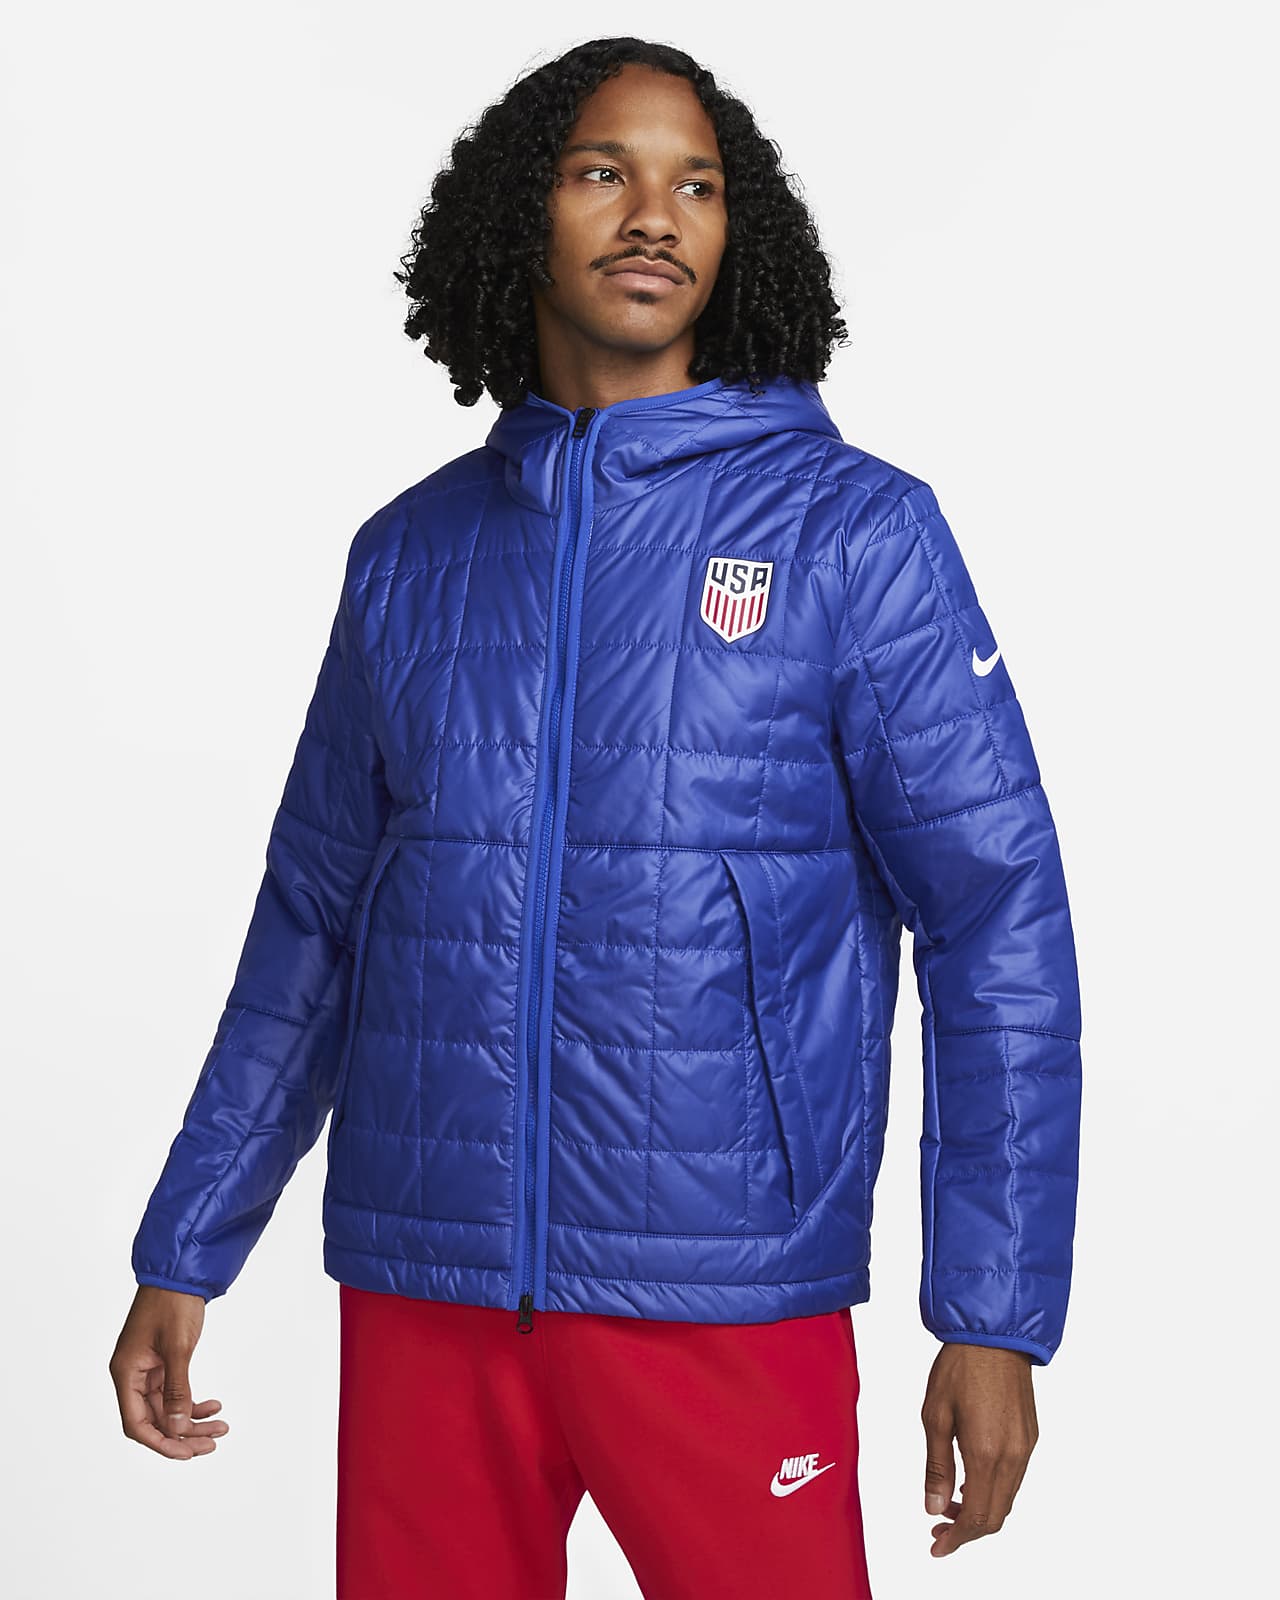 U.S. Nike Jacket. Nike.com